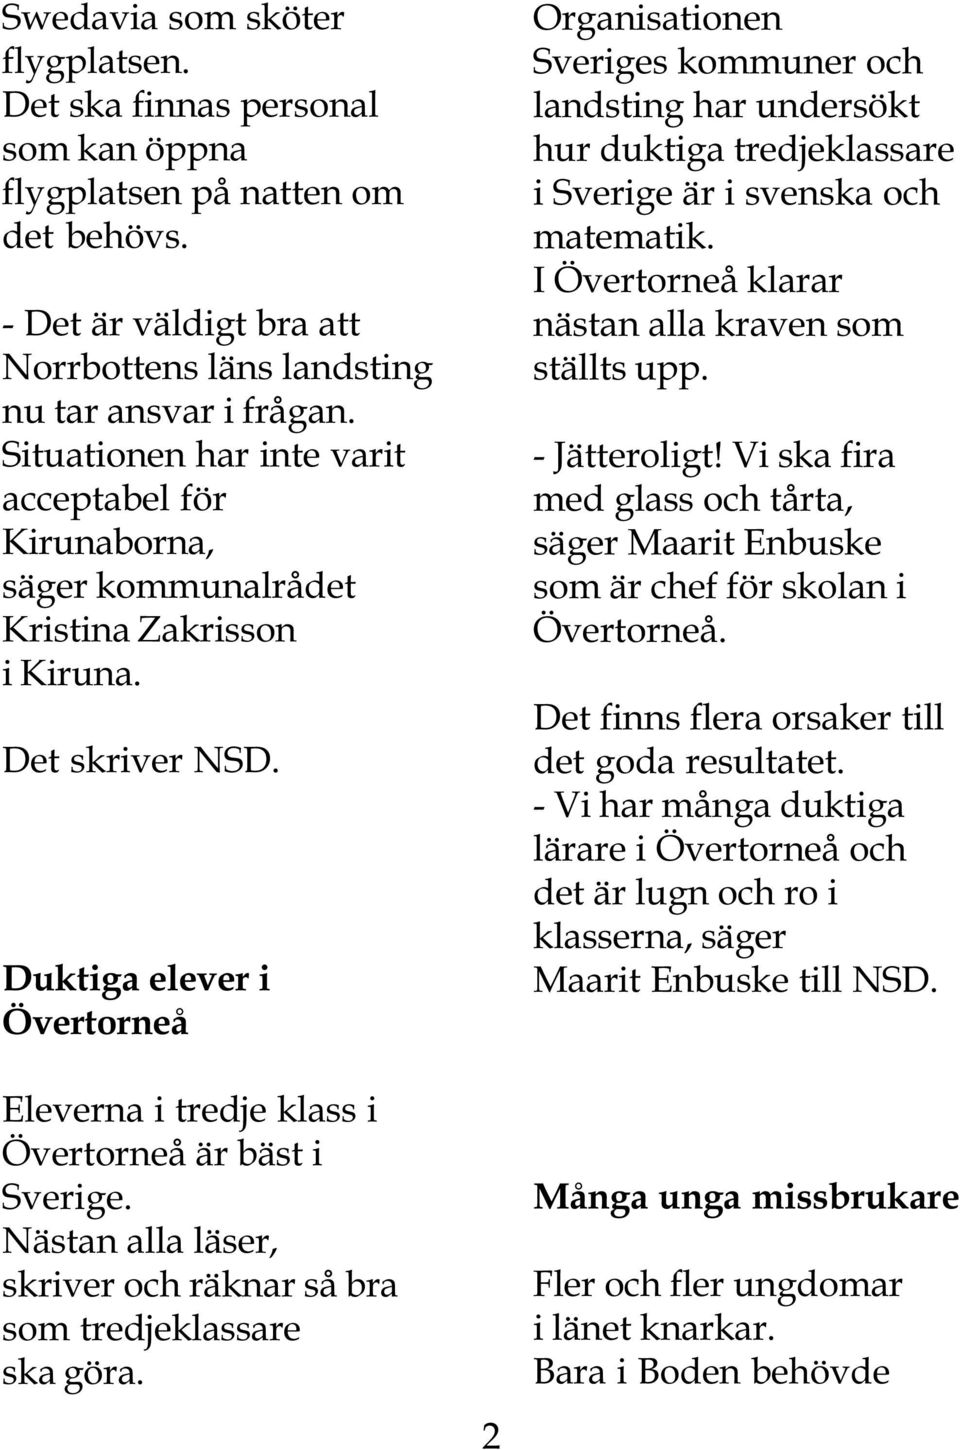 Duktiga elever i Övertorneå Eleverna i tredje klass i Övertorneå är bäst i Sverige. Nästan alla läser, skriver och räknar så bra som tredjeklassare ska göra.